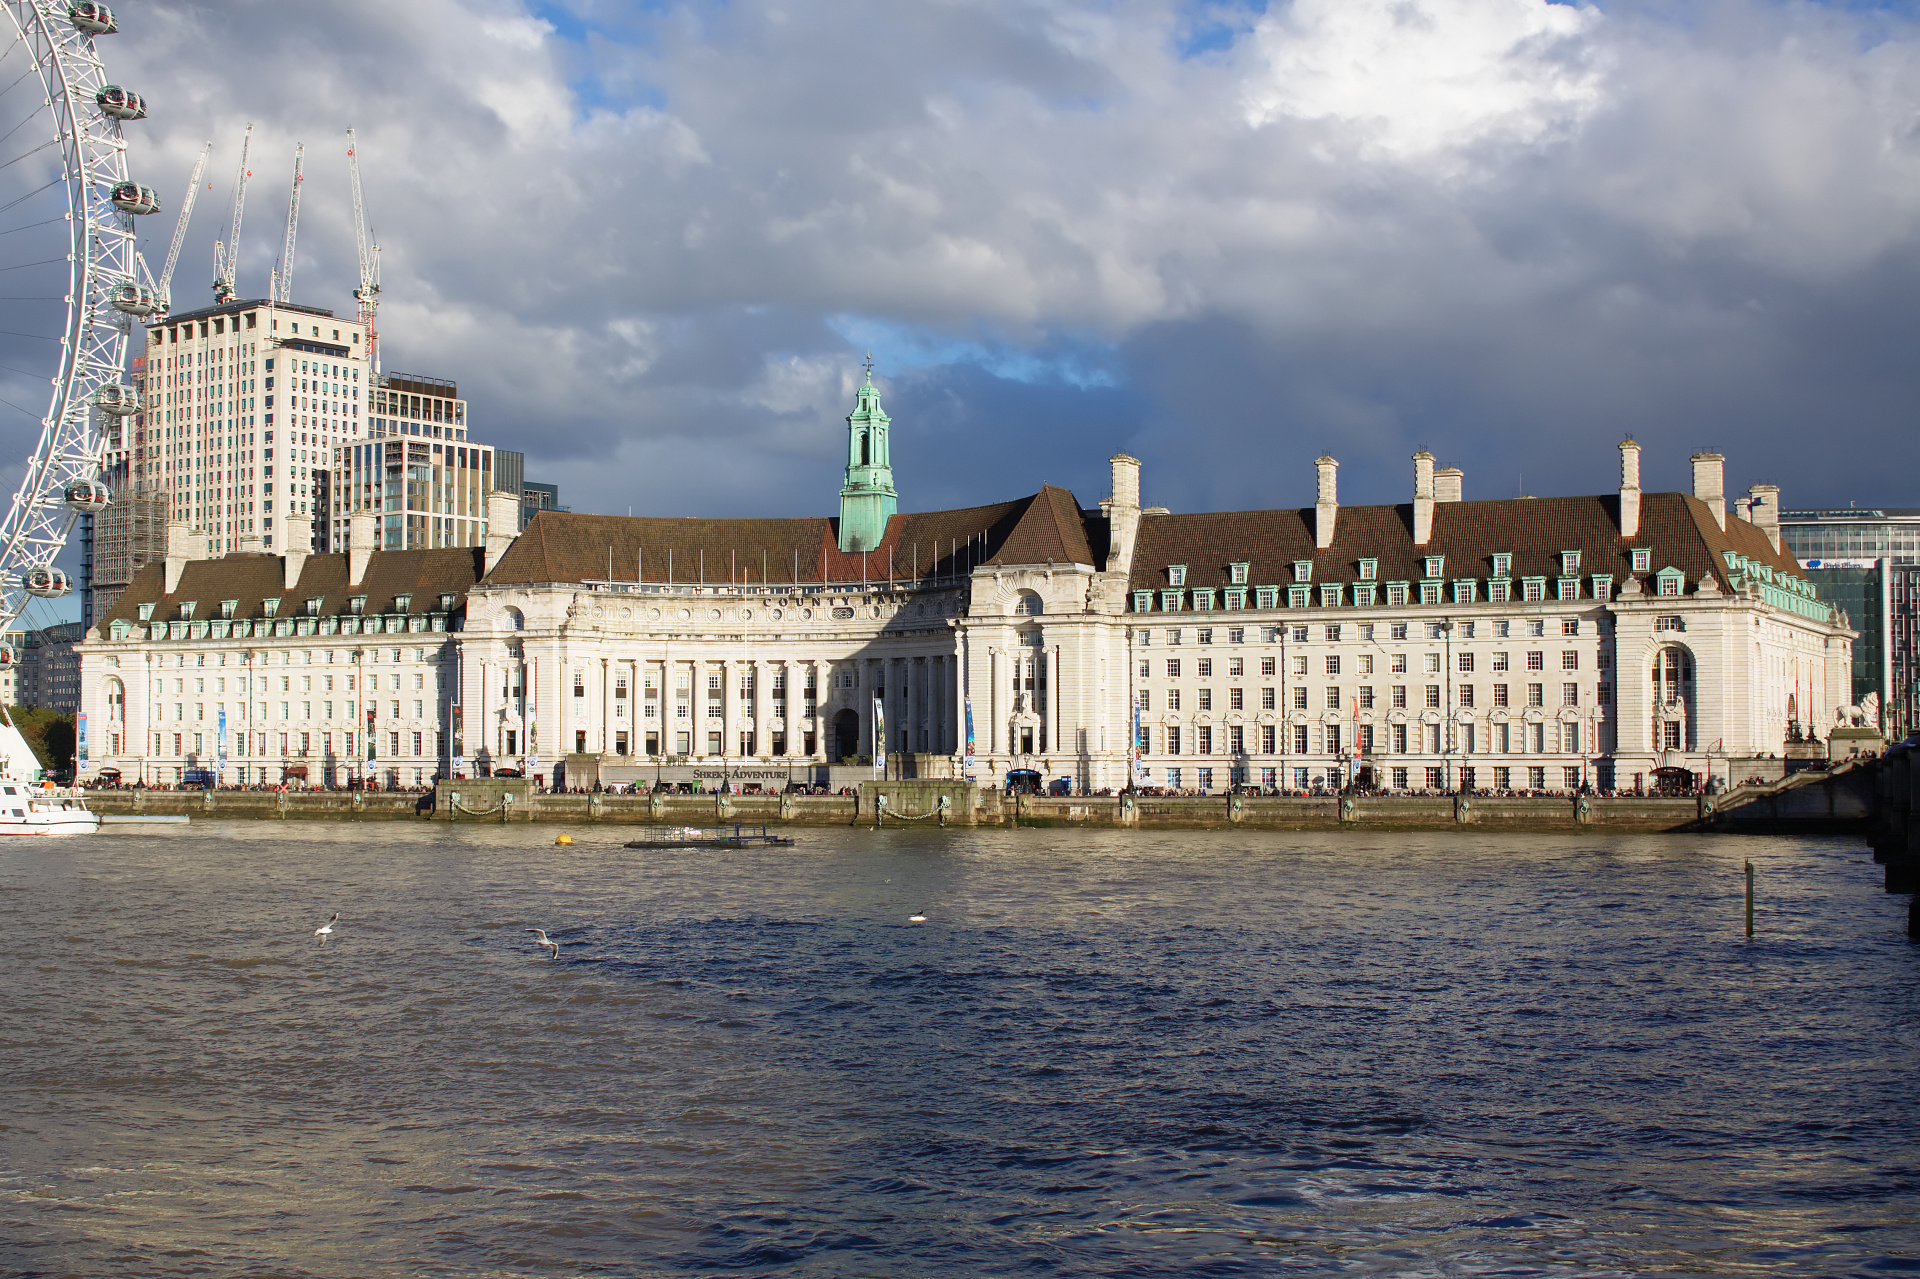 County Hall (Podróże » Londyn » Londyn za dnia)